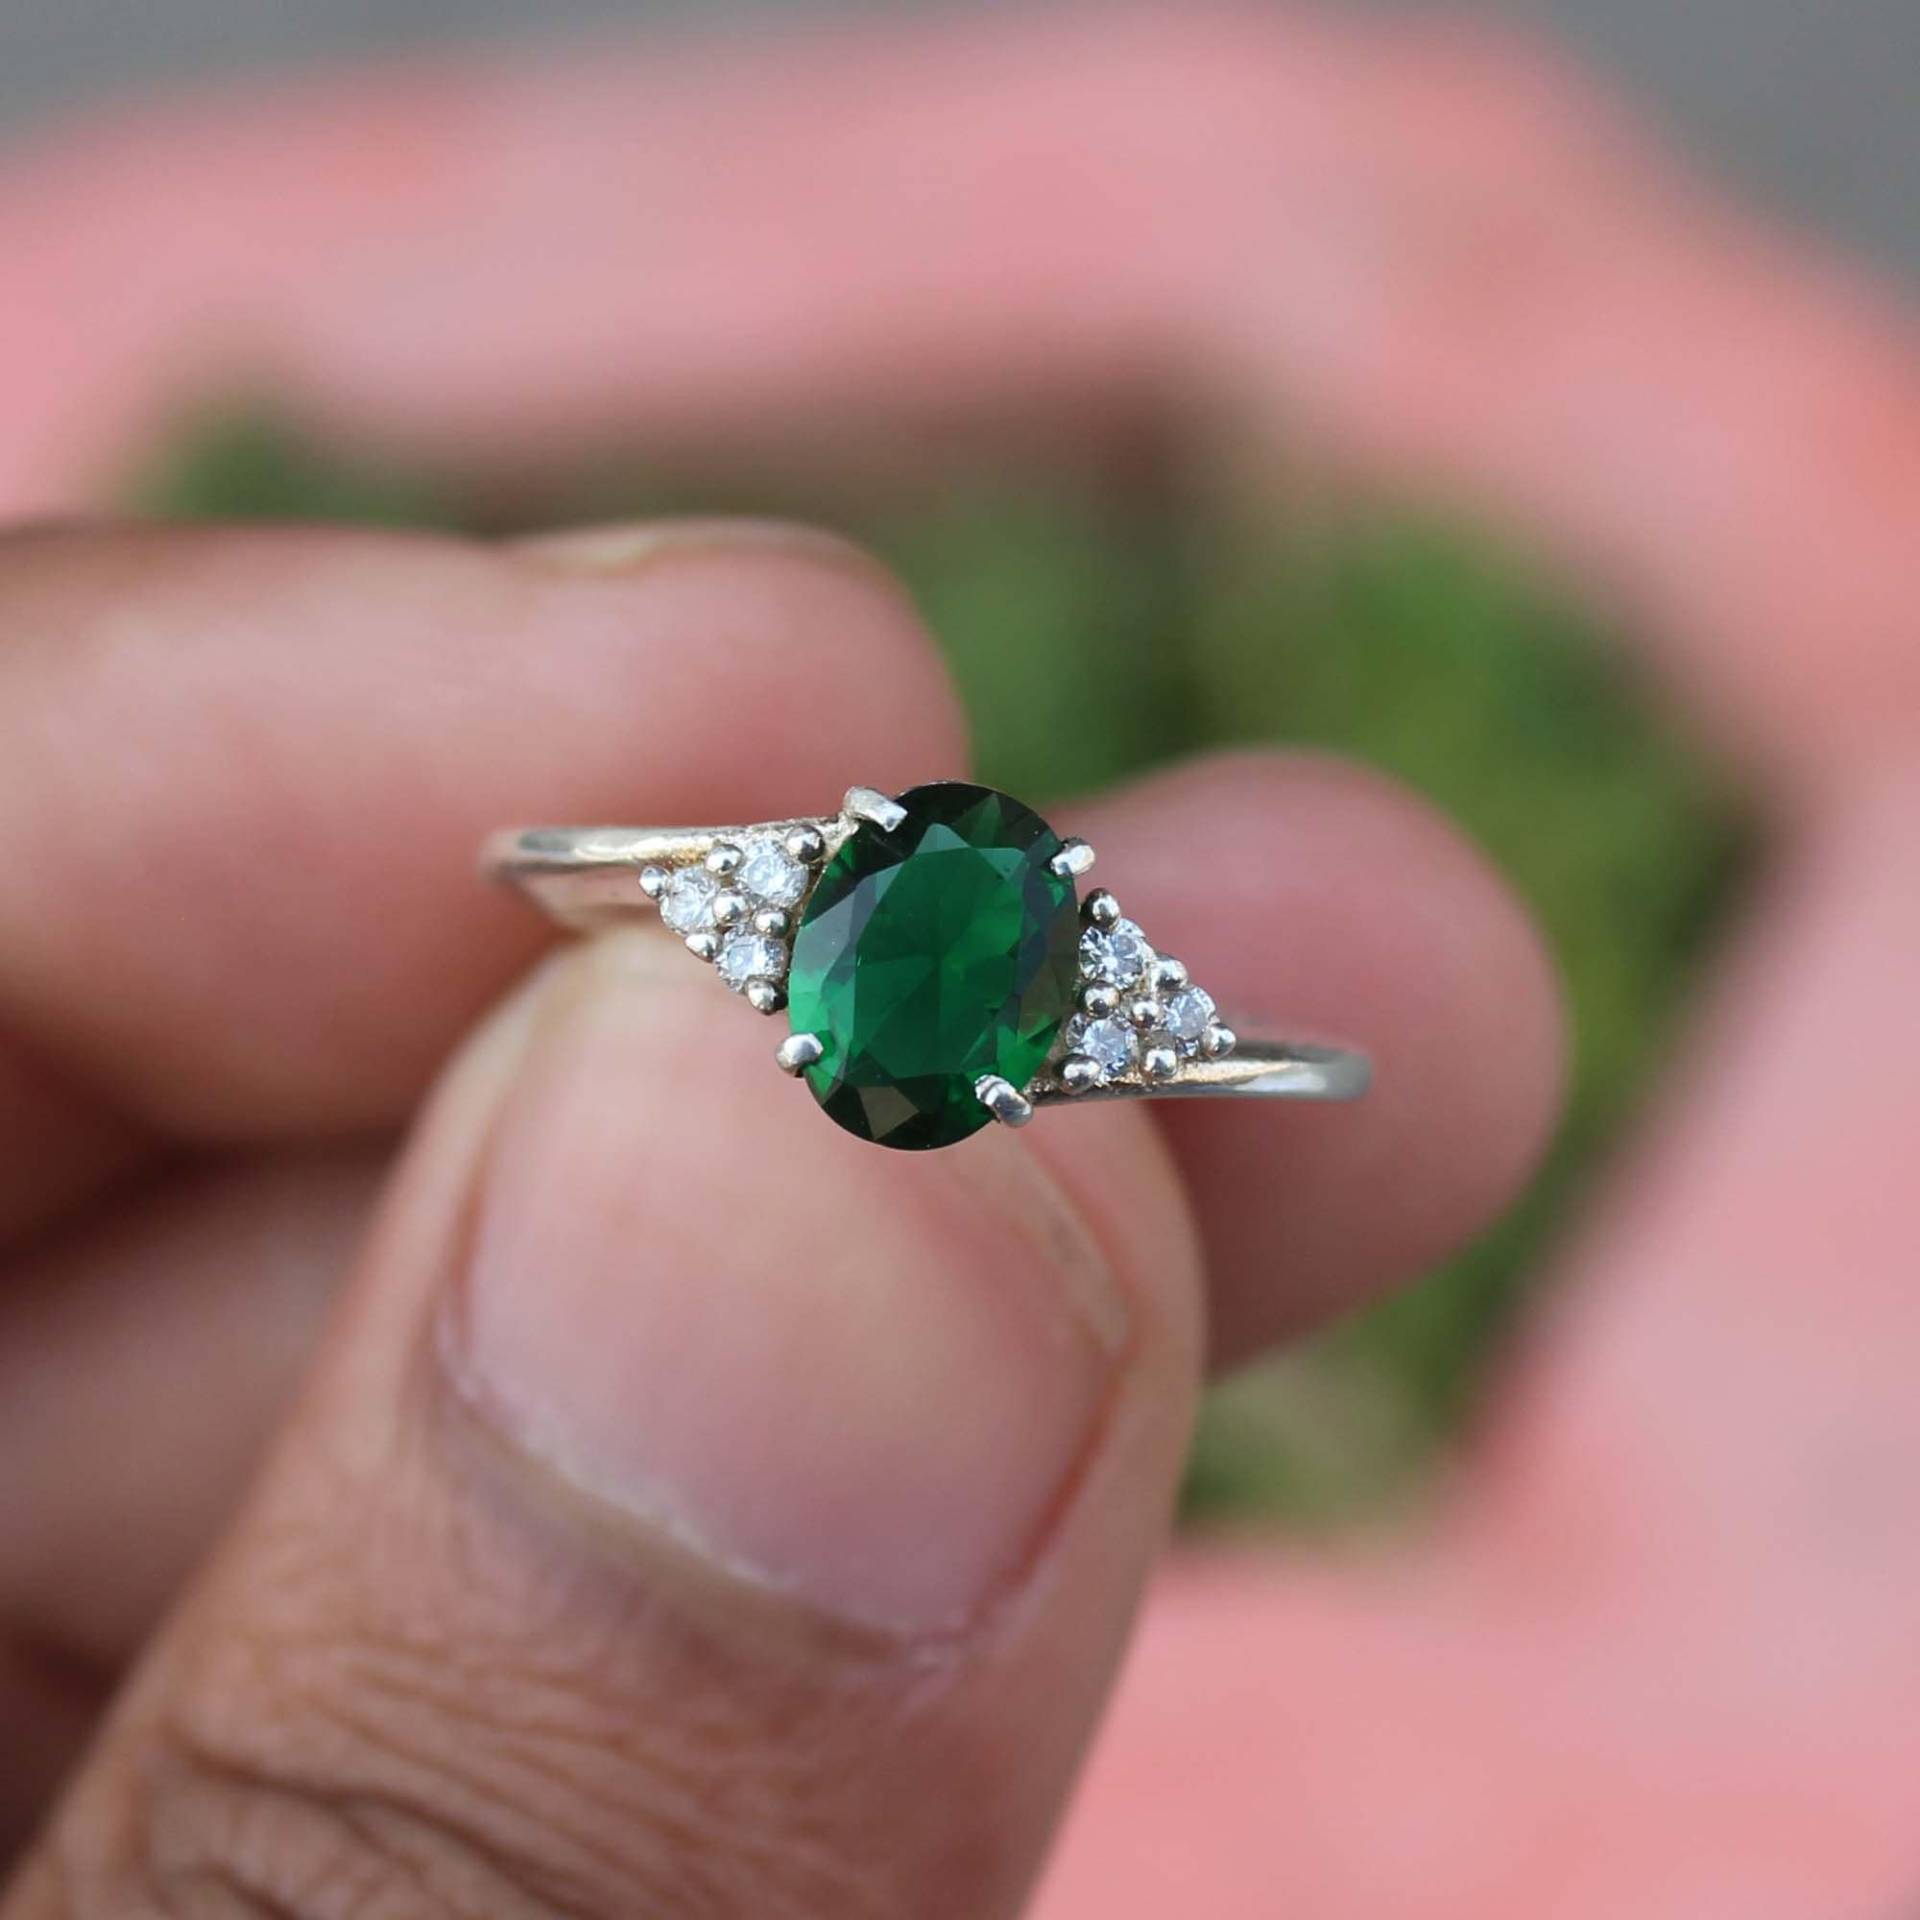 Labor Erstellt Smaragd Ring - 925 Sterling Silber Schöner Verlobungsring Versprechen Grüner Edelstein Jahrestag Geschenk Für Sie von Tonyjewellers